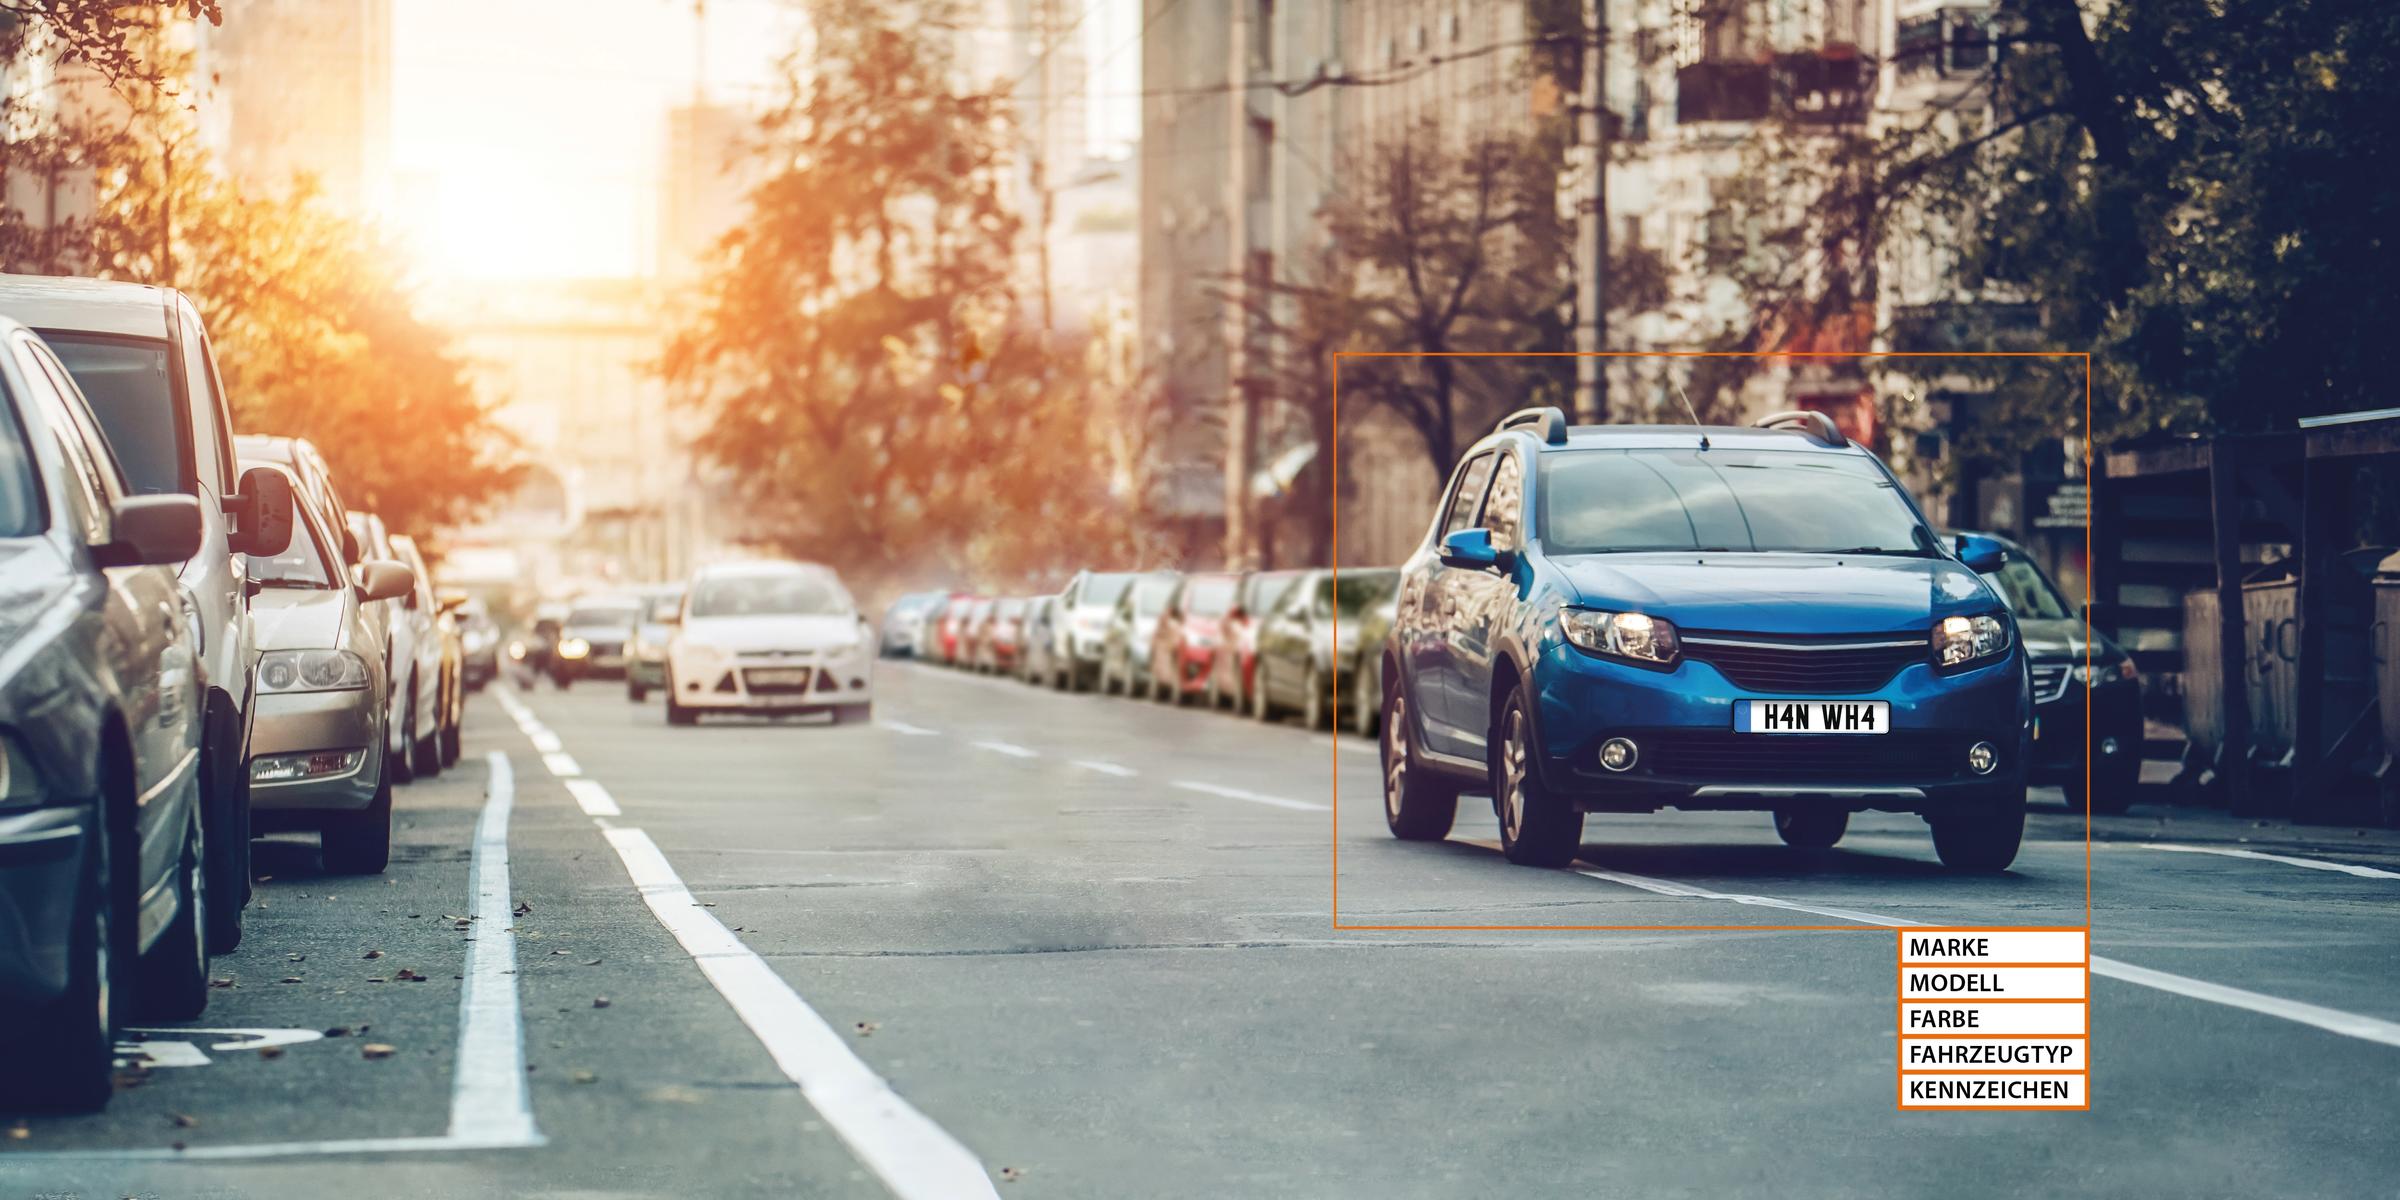 Bis zu sieben Fahrzeugkategorien und über 600 Fahrzeugmodelle von 70 Marken können mit der KI-basierten Technologie von Hanwha Techwin klassifiziert werden.